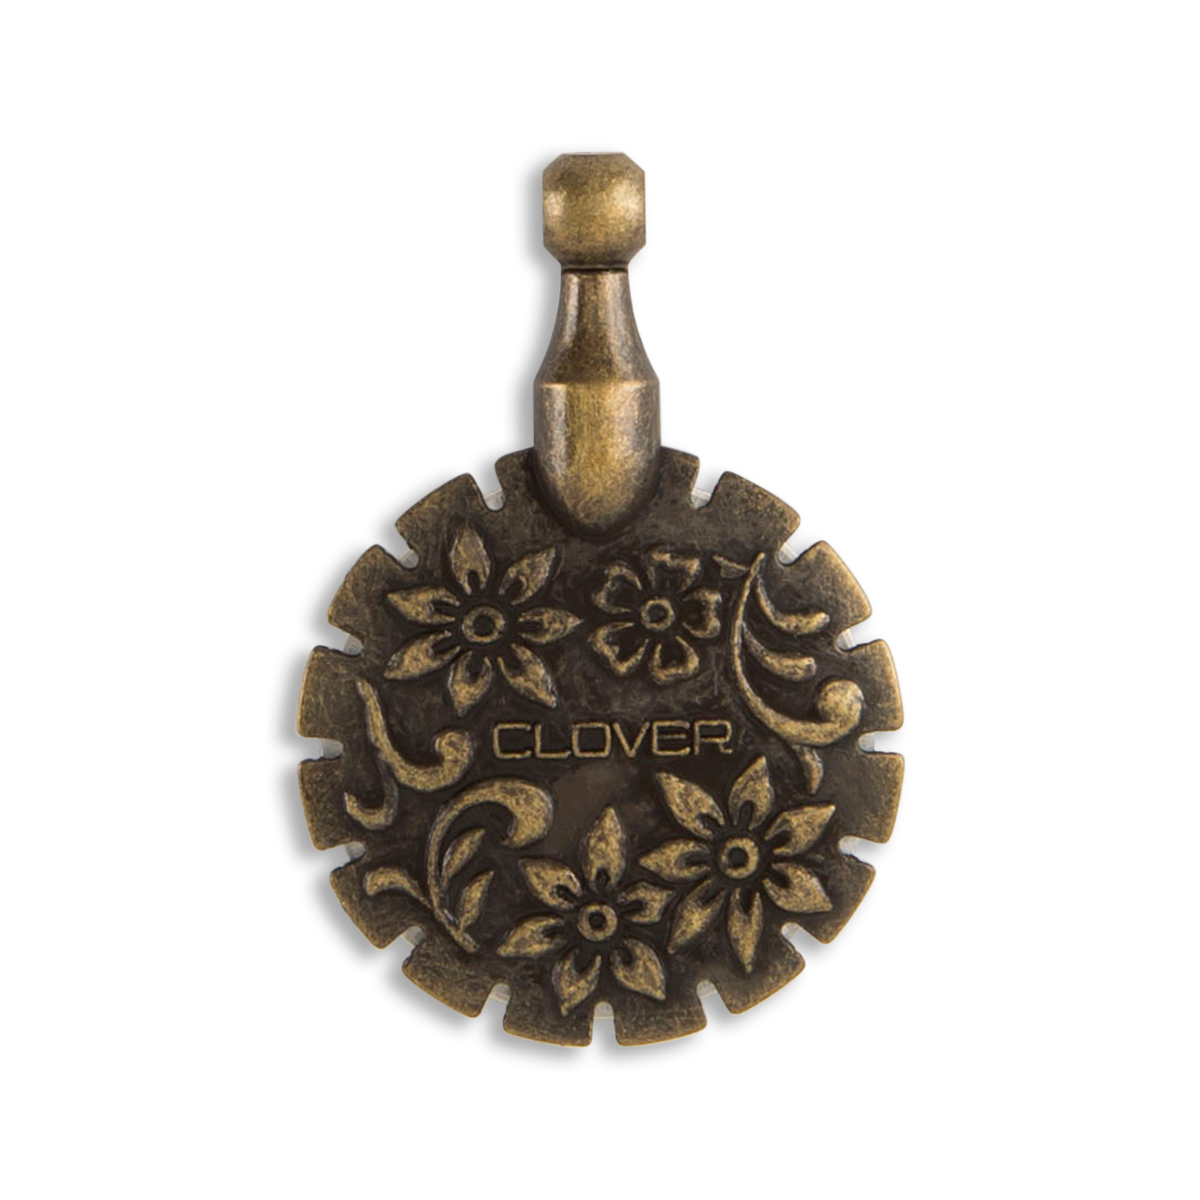 Clover Thread Cutter Pendant - Antique Gold - WAWAK Sewing Supplies